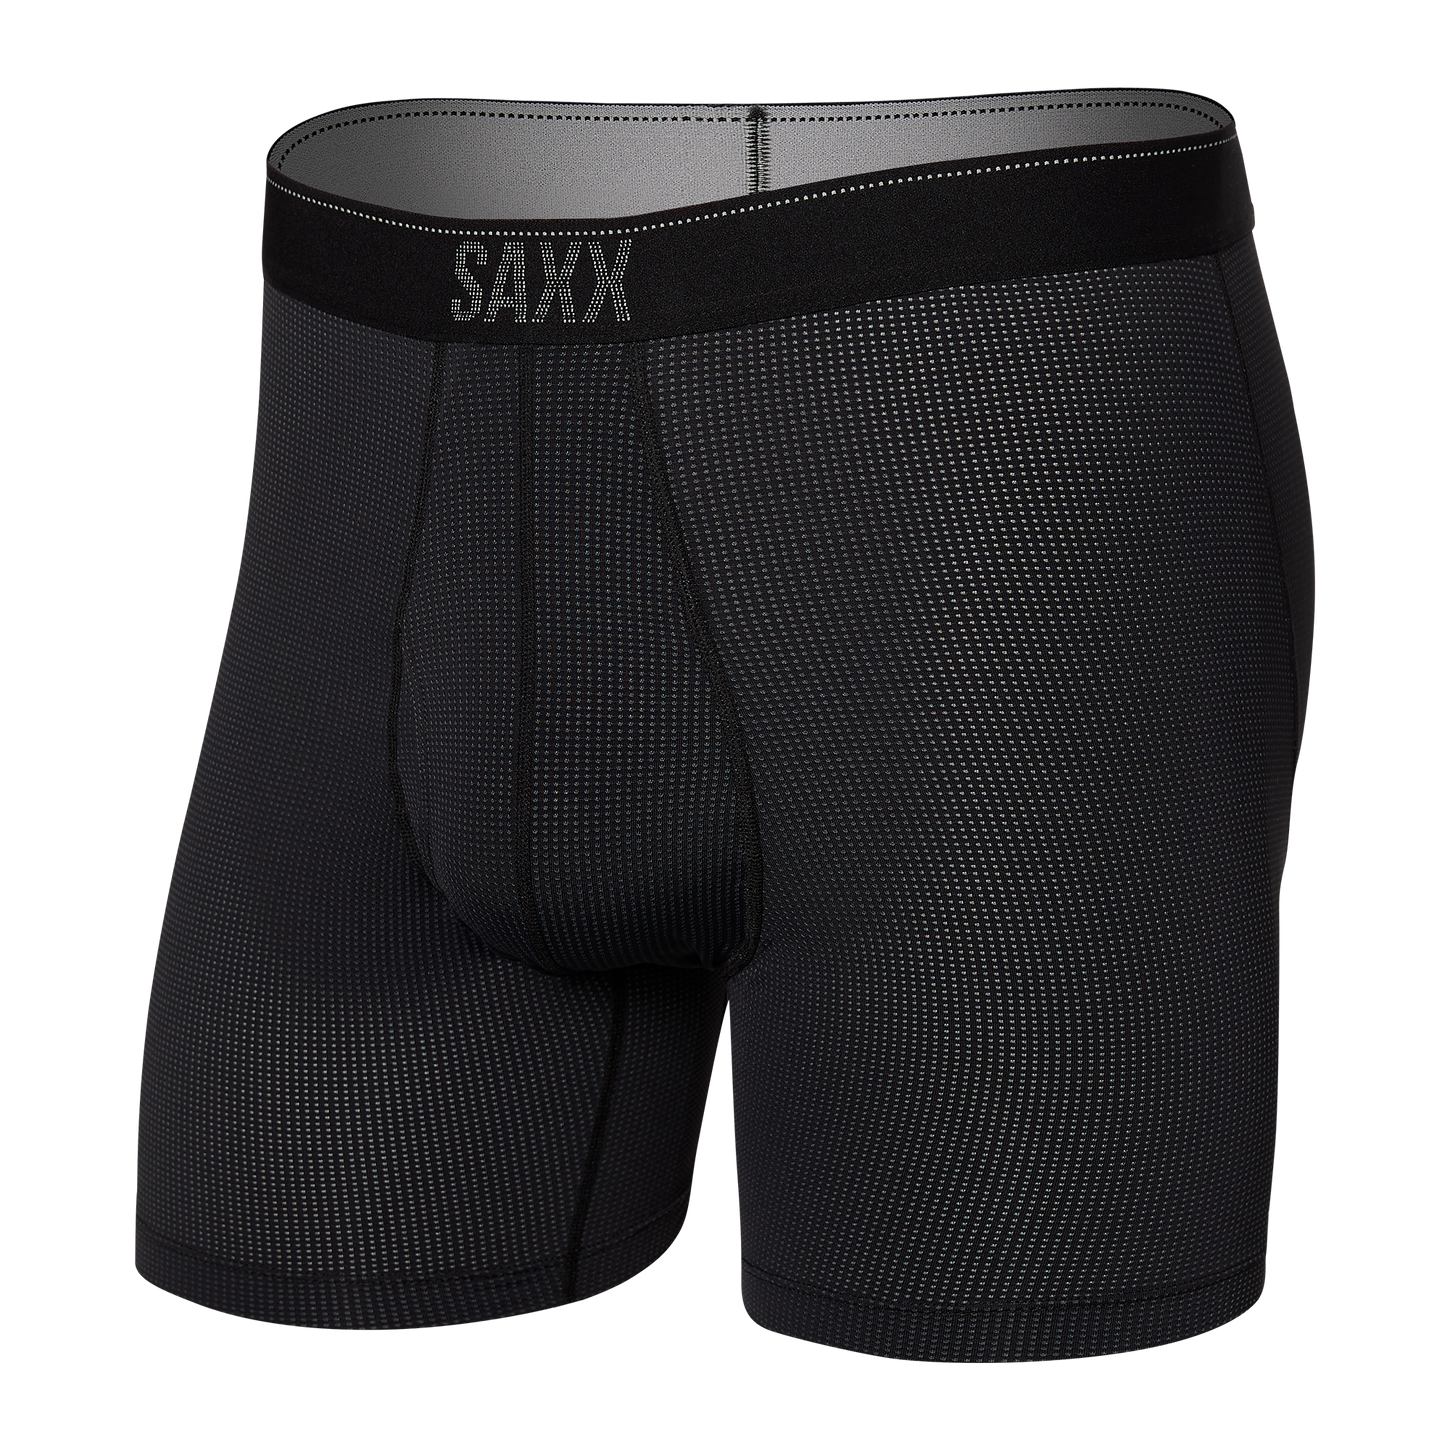 Saxx Men's Quest Boxer Brief Apparel SAXX Small Black II 